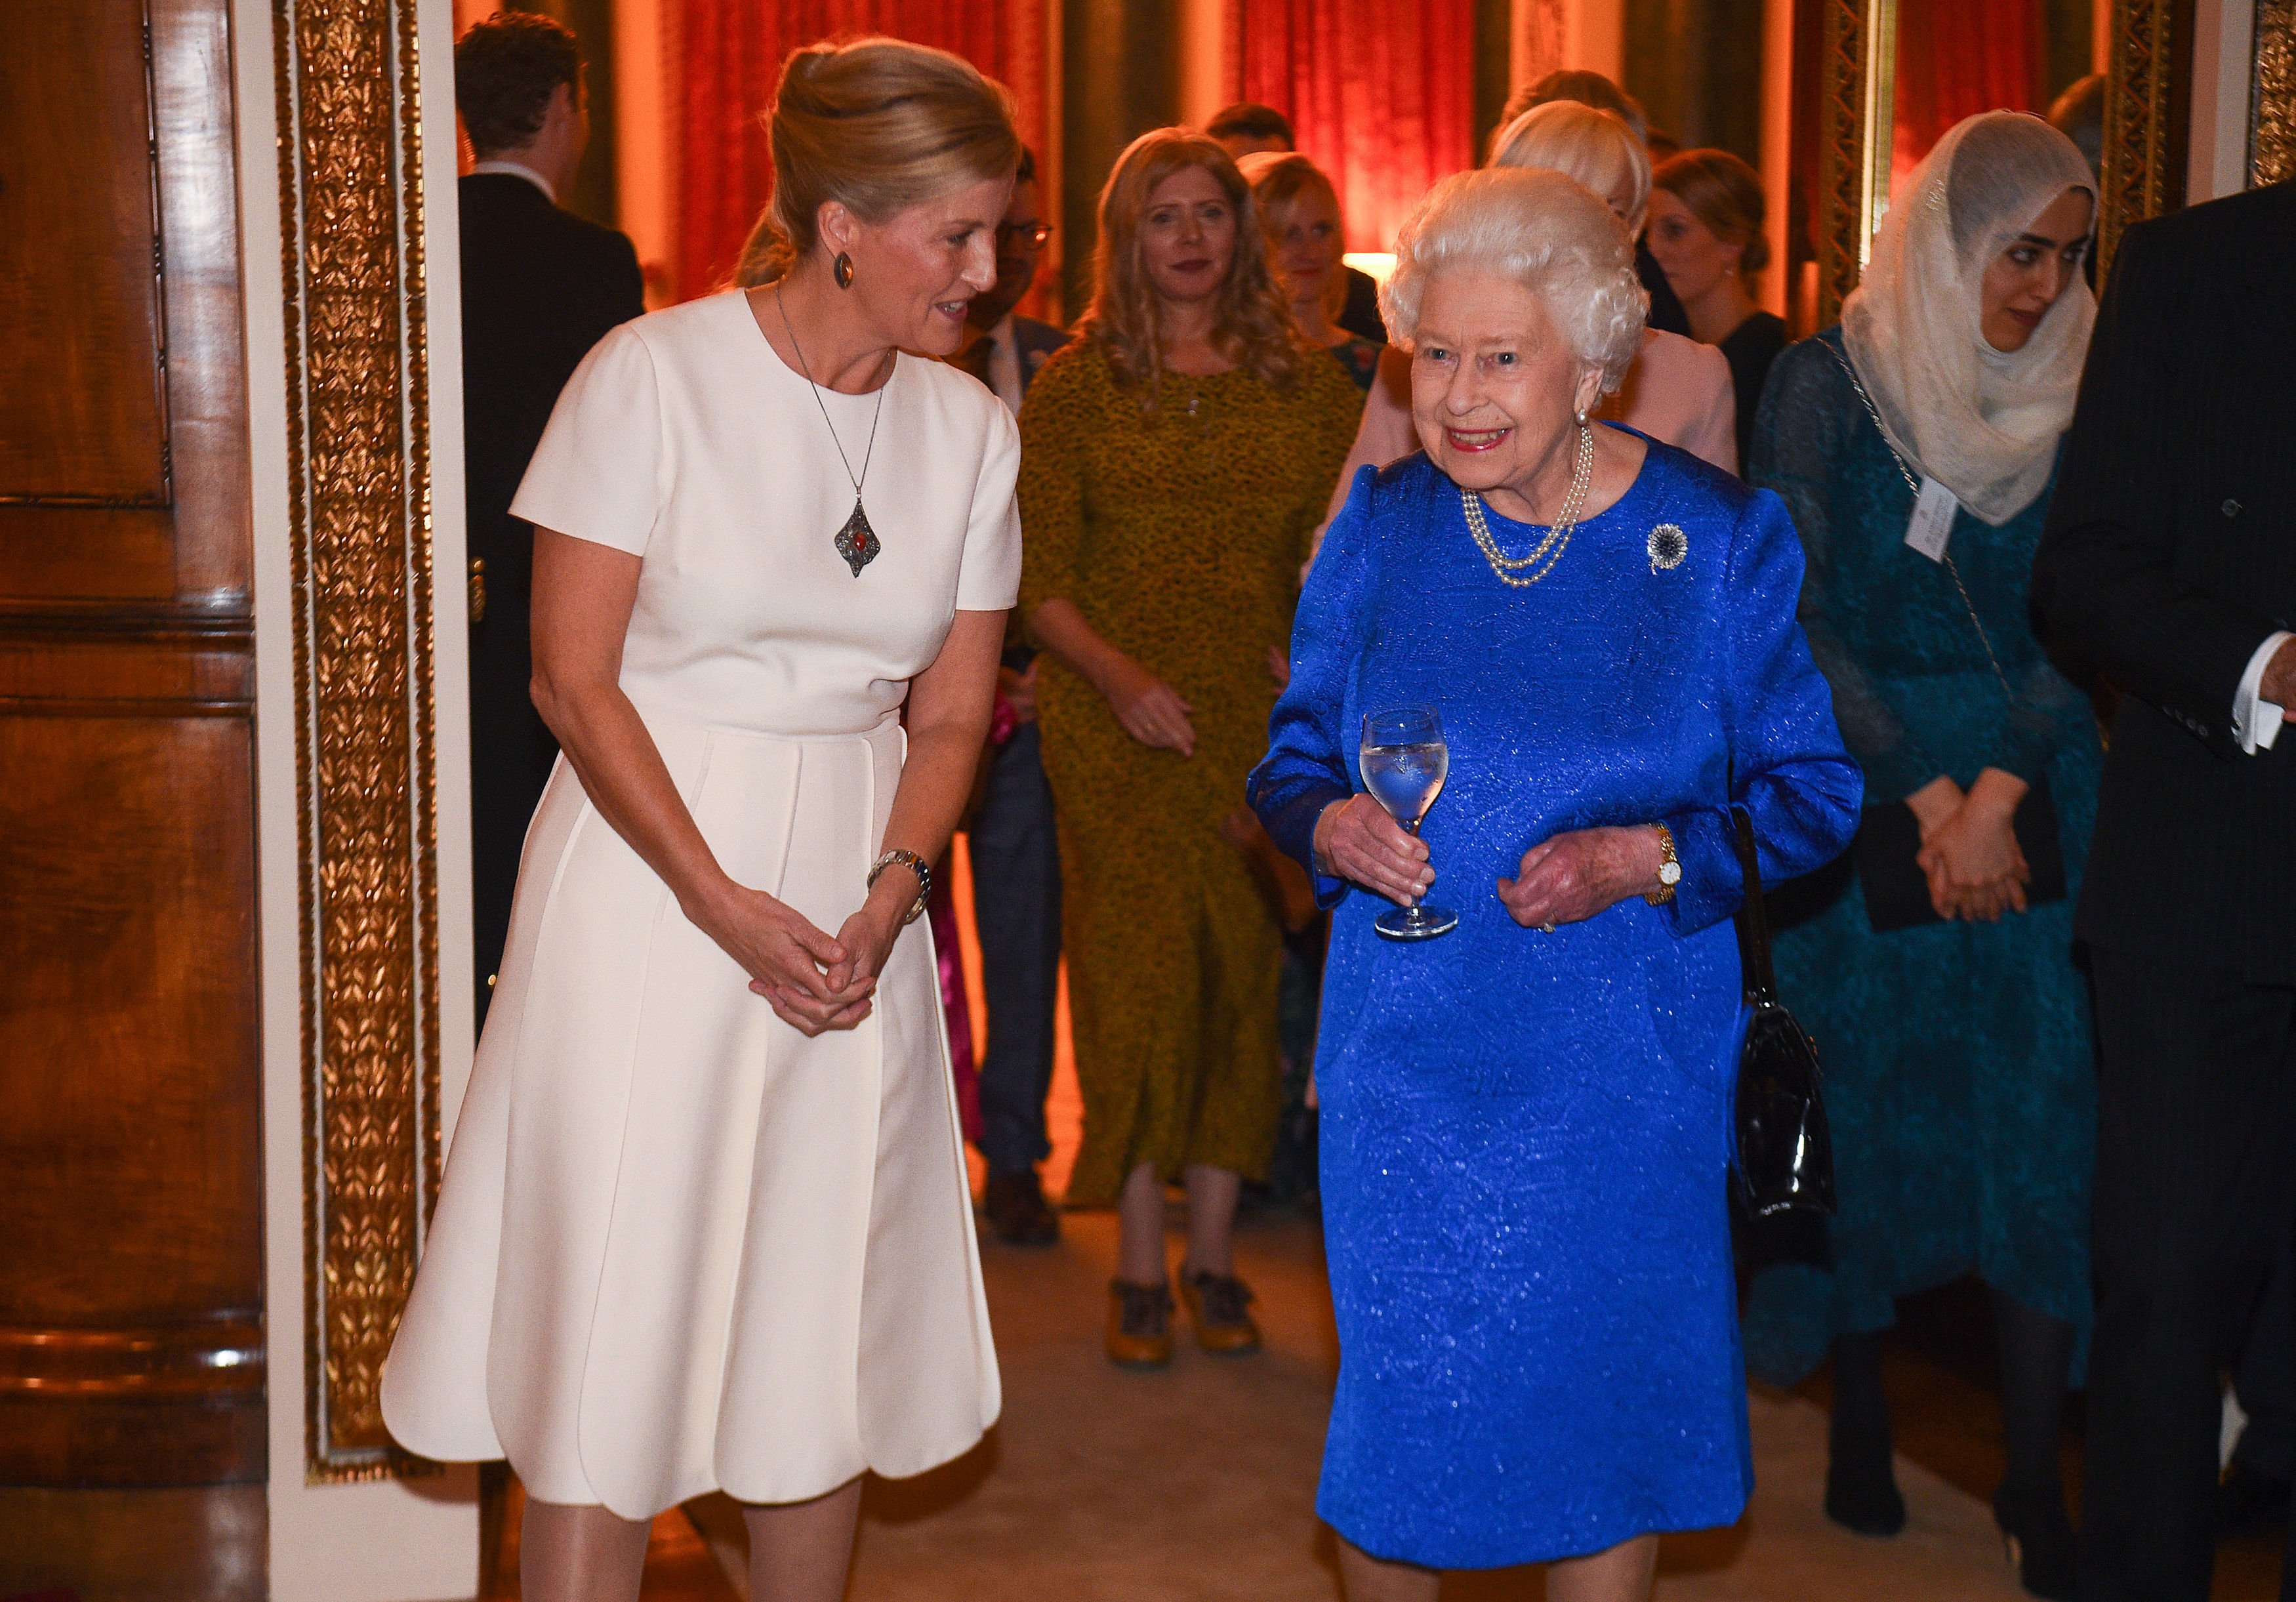 La reina Elizabeth II y Sophie, condesa de Wessex, asisten a una recepción en el Palacio de Buckingham en Londres el 29 de octubre de 2019. | Foto: Getty Images